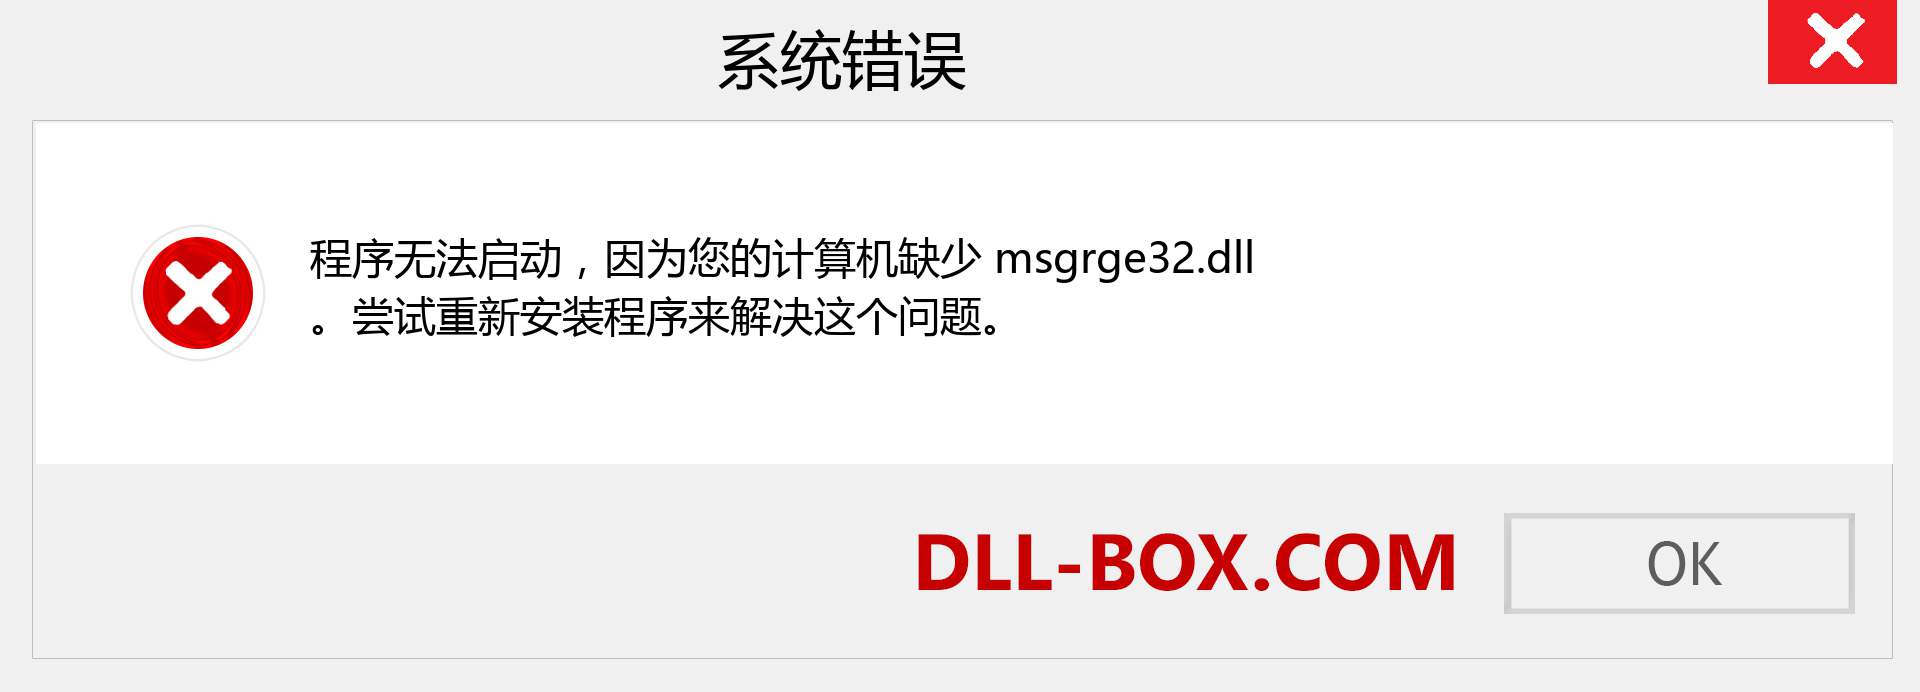 msgrge32.dll 文件丢失？。 适用于 Windows 7、8、10 的下载 - 修复 Windows、照片、图像上的 msgrge32 dll 丢失错误